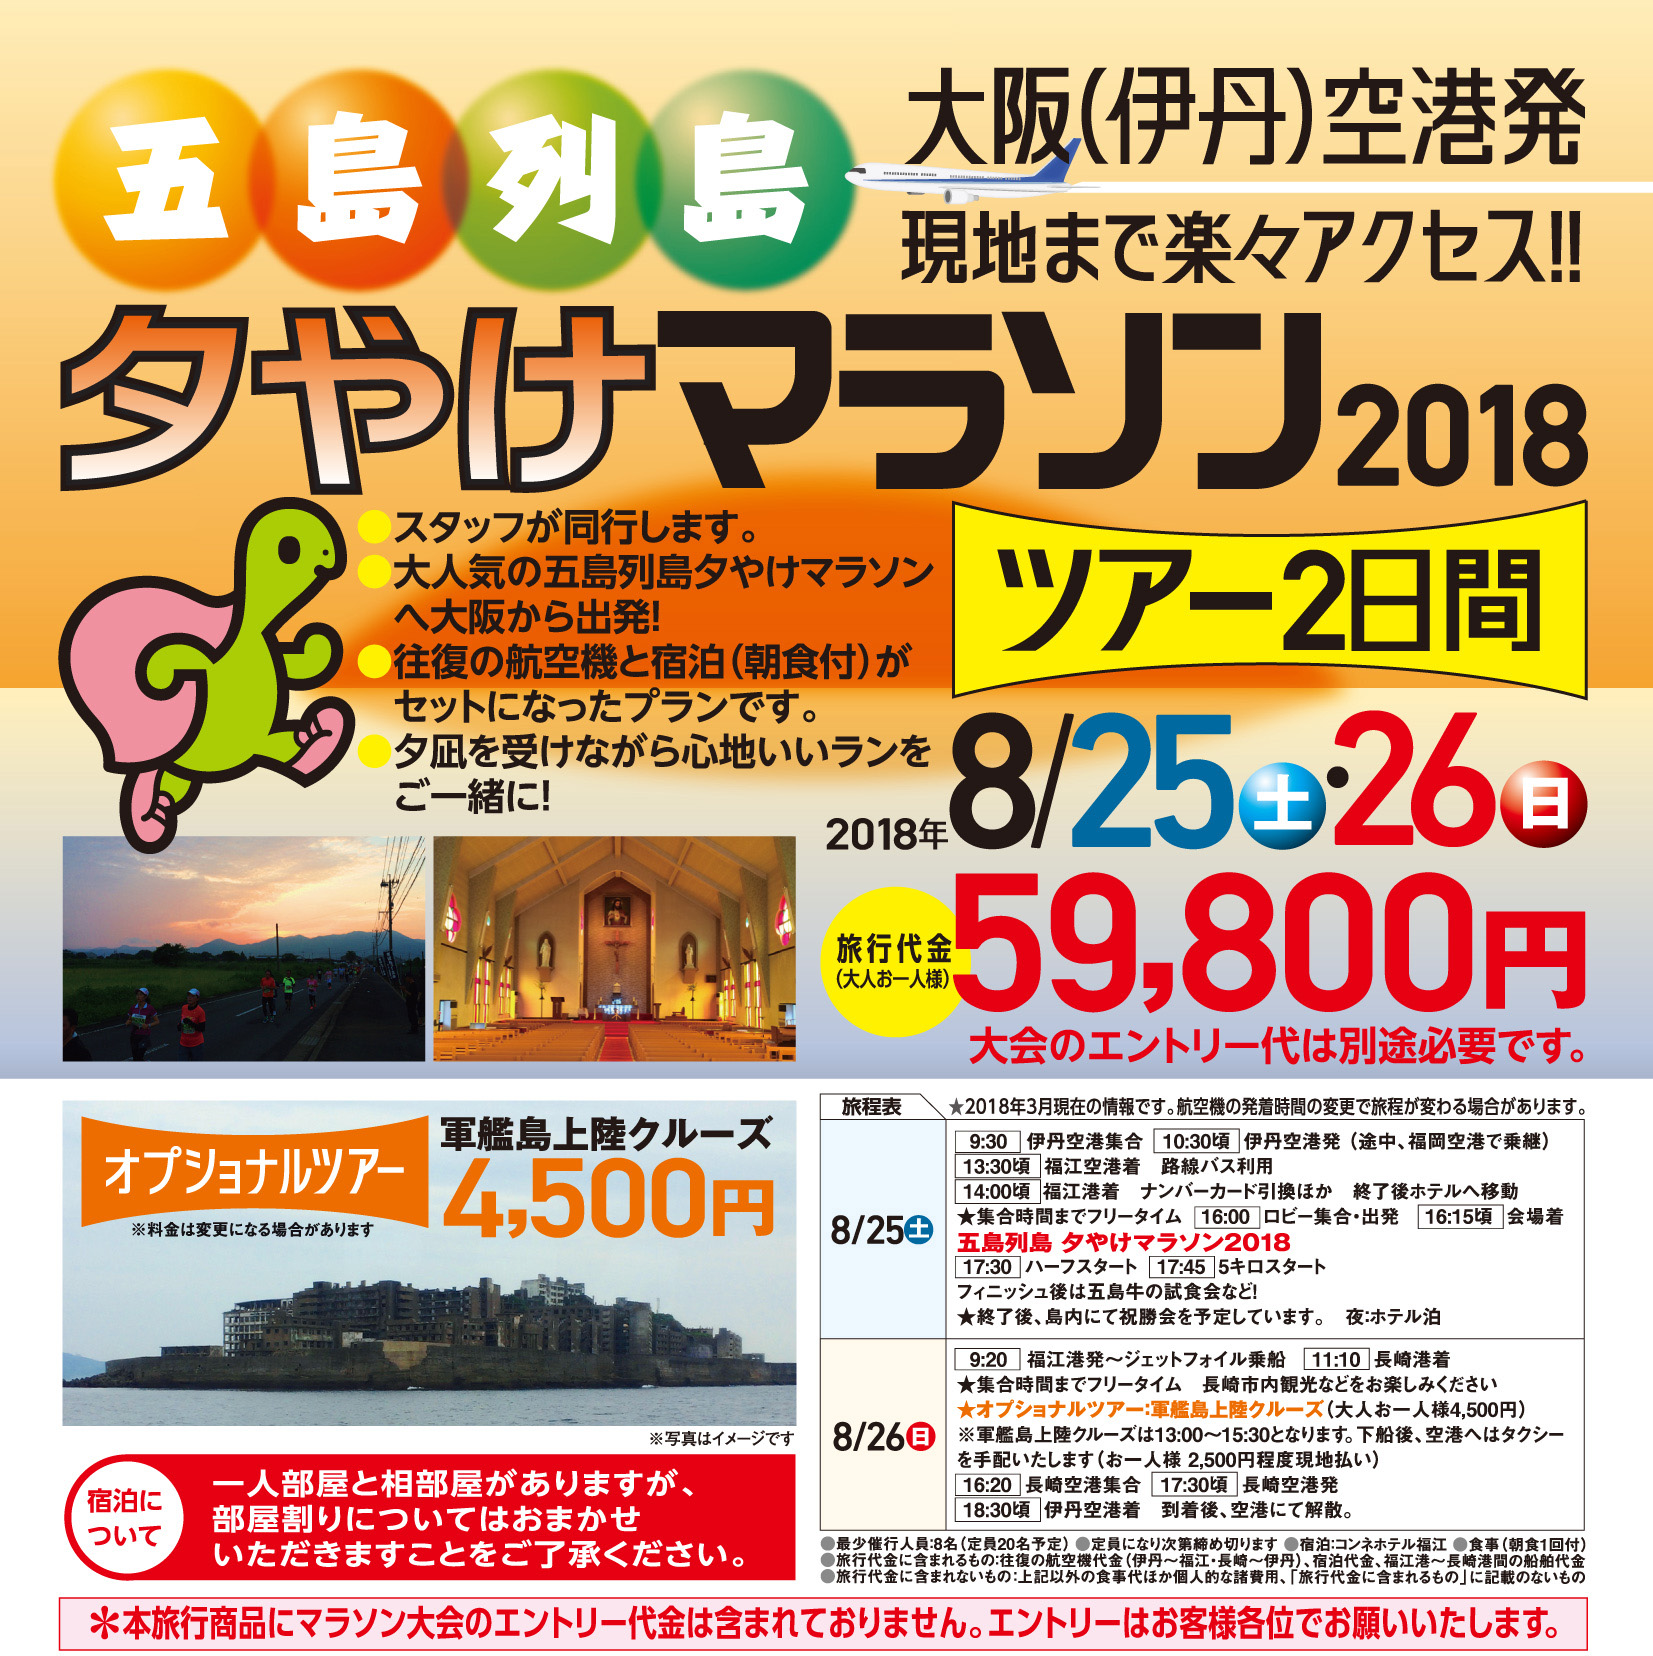 五島列島「夕やけマラソン 2018」ツアー2日間